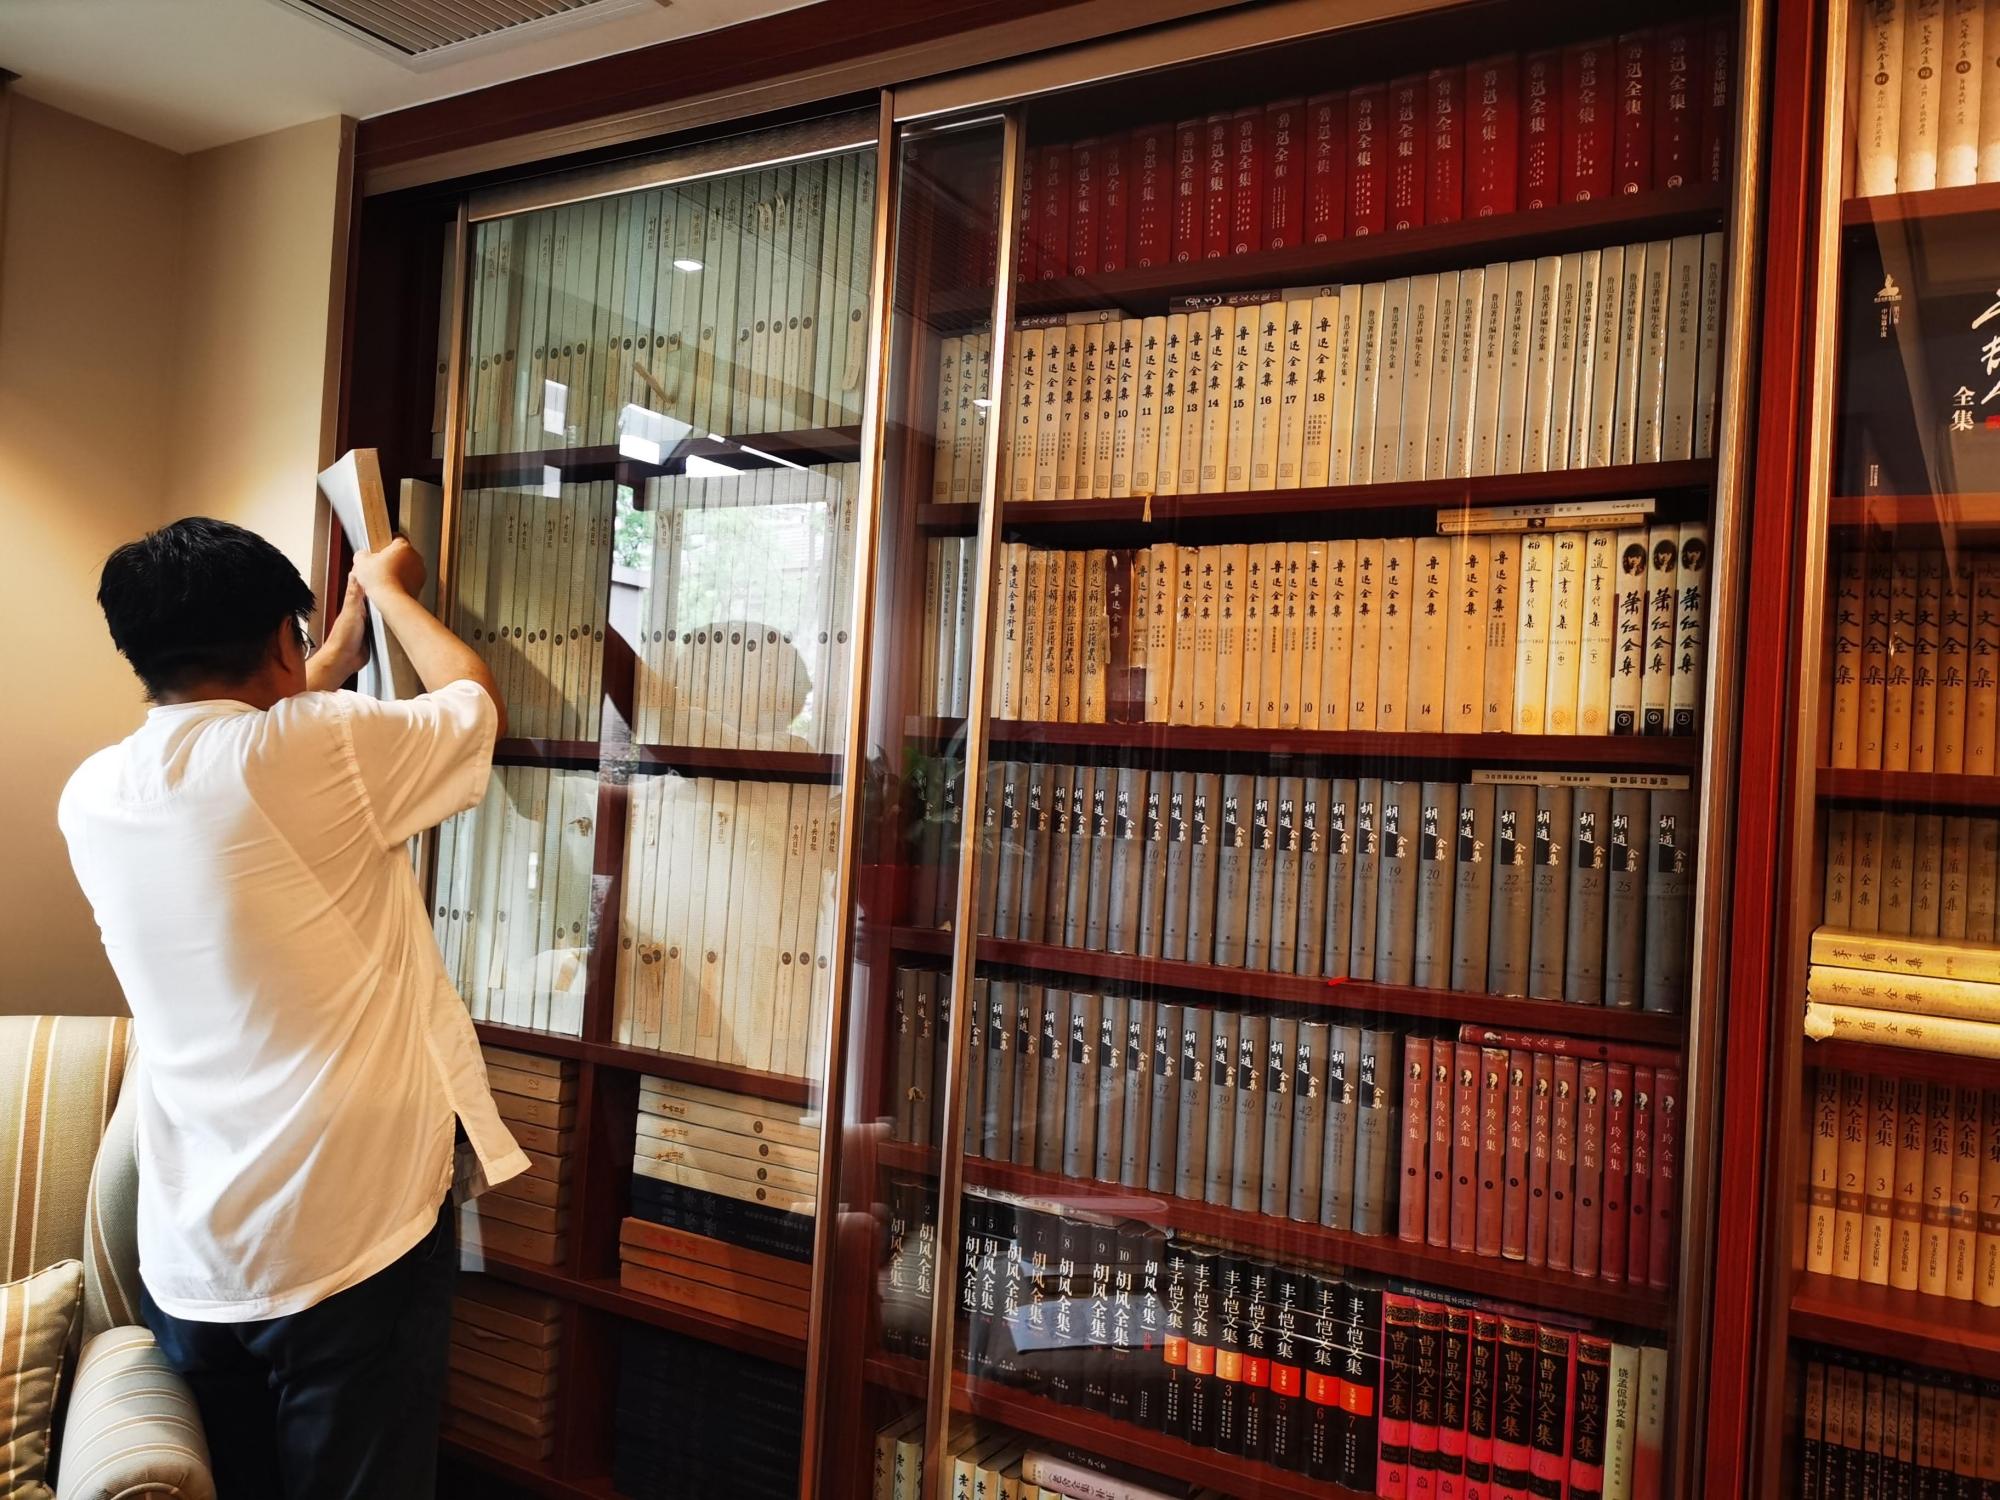 走近学者李怡的书房:藏书以吨计,鲁迅是真爱;俯身读好书,抬头望